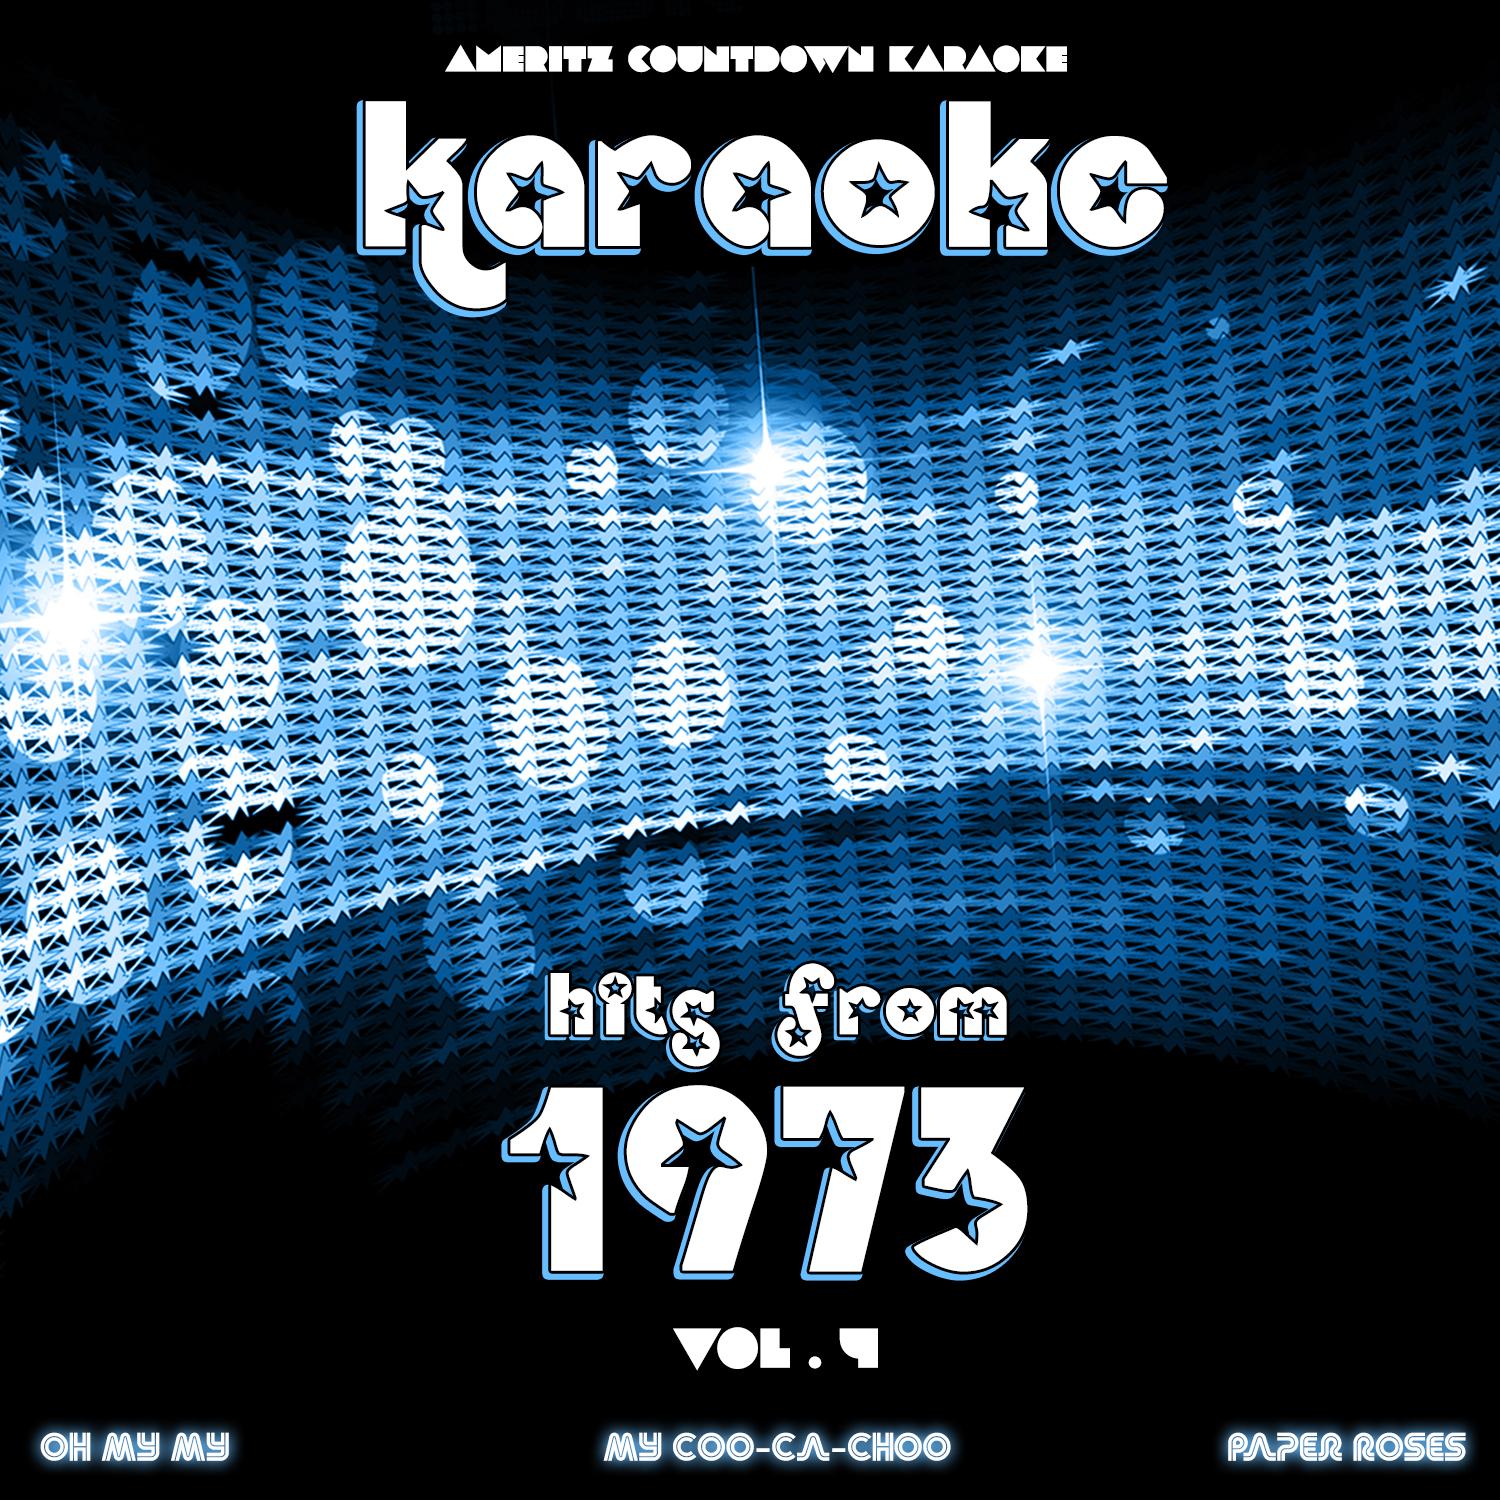 Karaoke Hits from 1973, Vol. 4